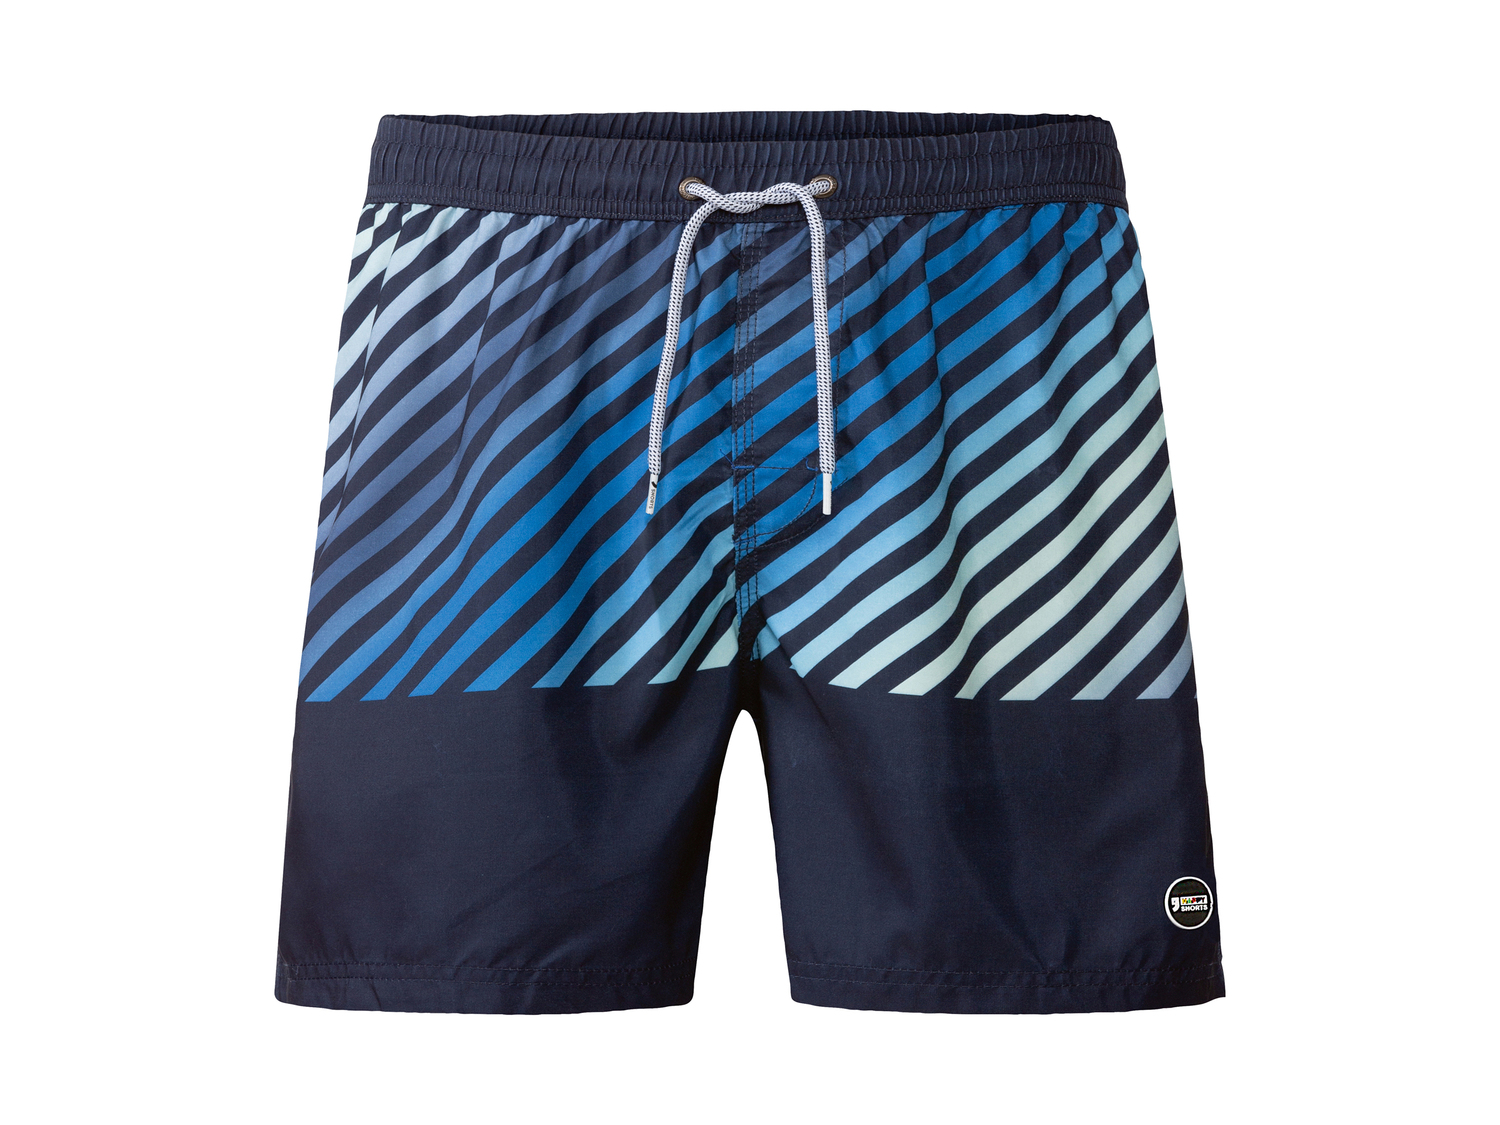 Shorts mare da uomo Happy-shorts, prezzo 12.99 &#8364; 
Misure: M-XL
Taglie ...